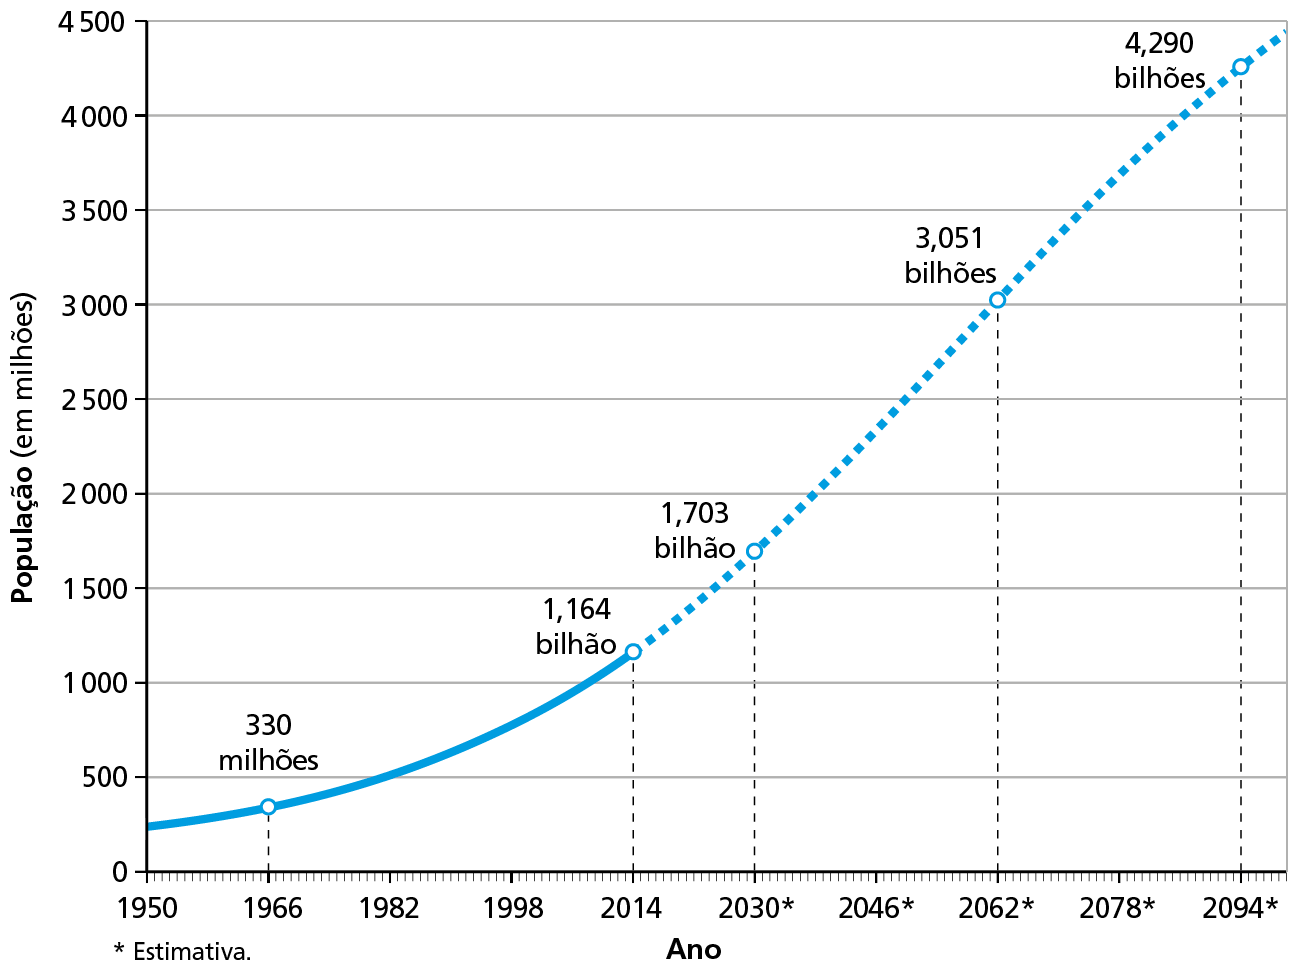 Gráfico. África: crescimento populacional (de 1950 a 2095). 
Gráfico de linha mostrando a curva de crescimento populacional do continente africano. No eixo vertical do gráfico, a população do continente em milhões de habitantes, variando de 0 a 4.500. No eixo horizontal, a linha do tempo, de 1950 a 2094.
Em 1950: 300 milhões de habitantes. 
Em 1966: 330 milhões de habitantes. 
Em 1982: 500 milhões de habitantes. 
Em 1998: 800 milhões de habitantes. 
Em 2014: 1.164 bilhão de habitantes. 
Em 2030: estimativa de 1.703 bilhão de habitantes. 
Em 2062: estimativa de 3.051 bilhão de habitantes. 
Em 2094: estimativa de 4.290 bilhão de habitantes.